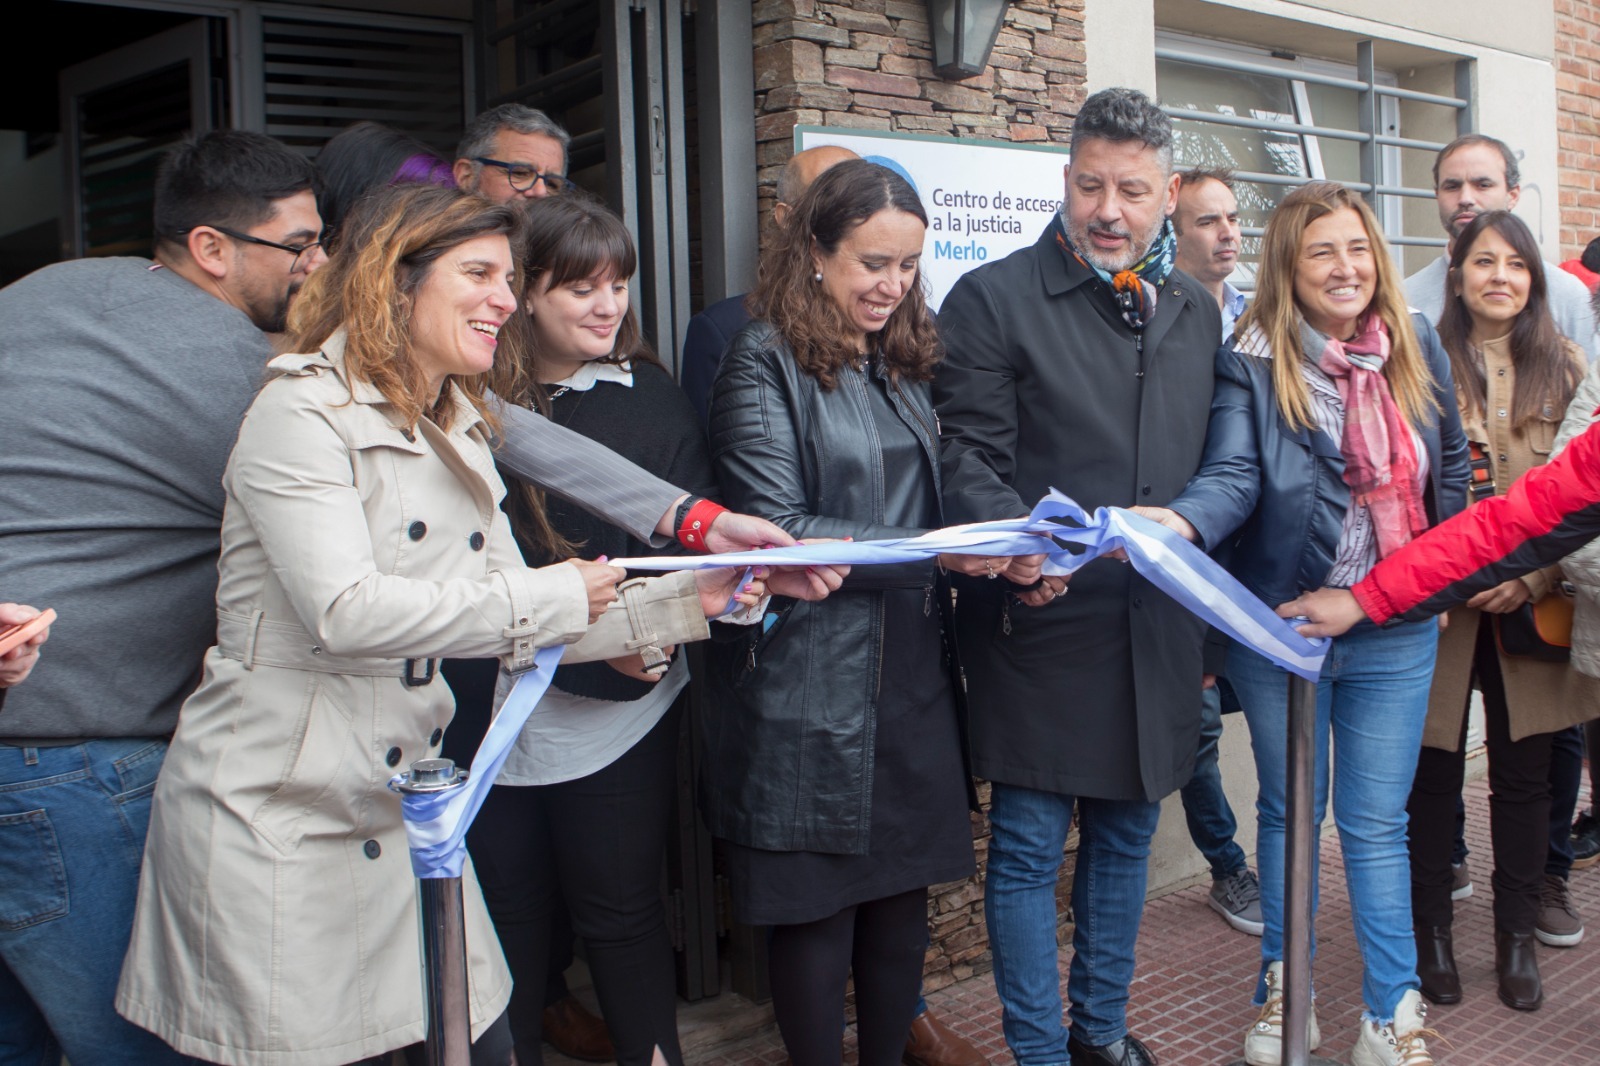 Se inauguró el Centro de Acceso a la Justicia N°110 en Merlo, provincia de Buenos Aires